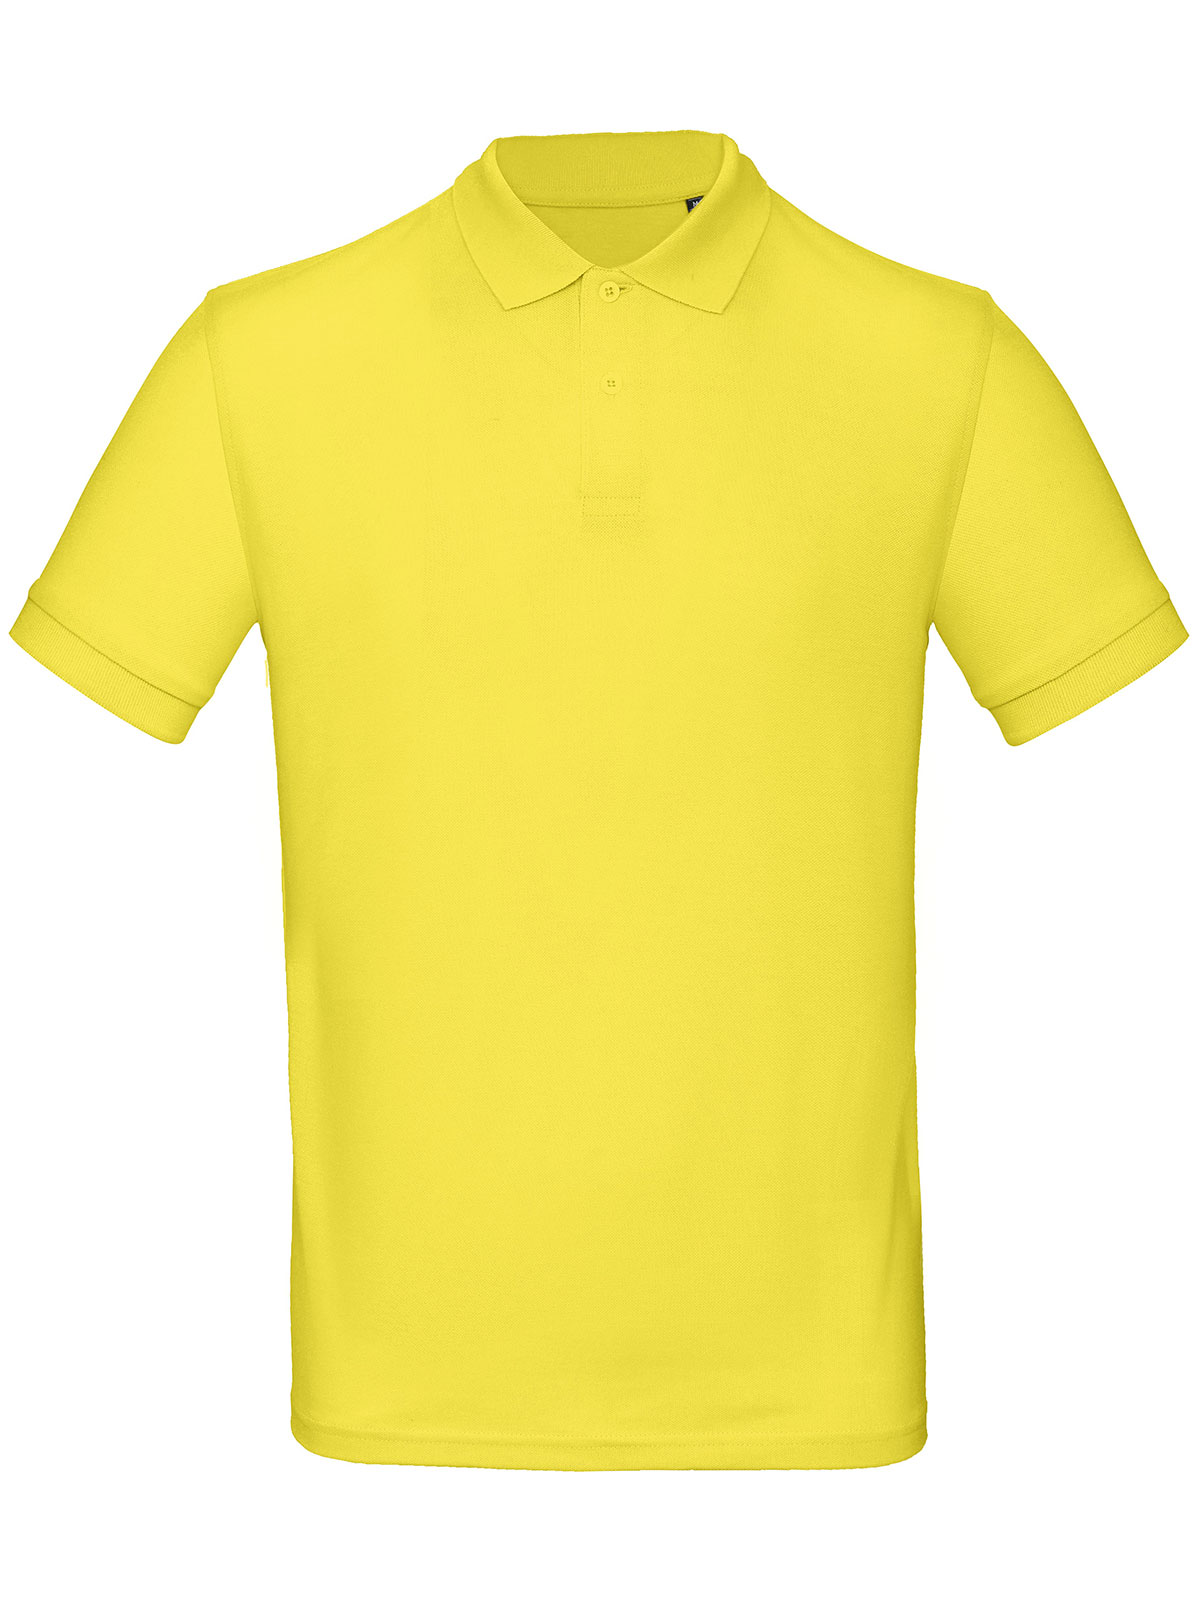 inspire-polo-men-solar-yellow.webp